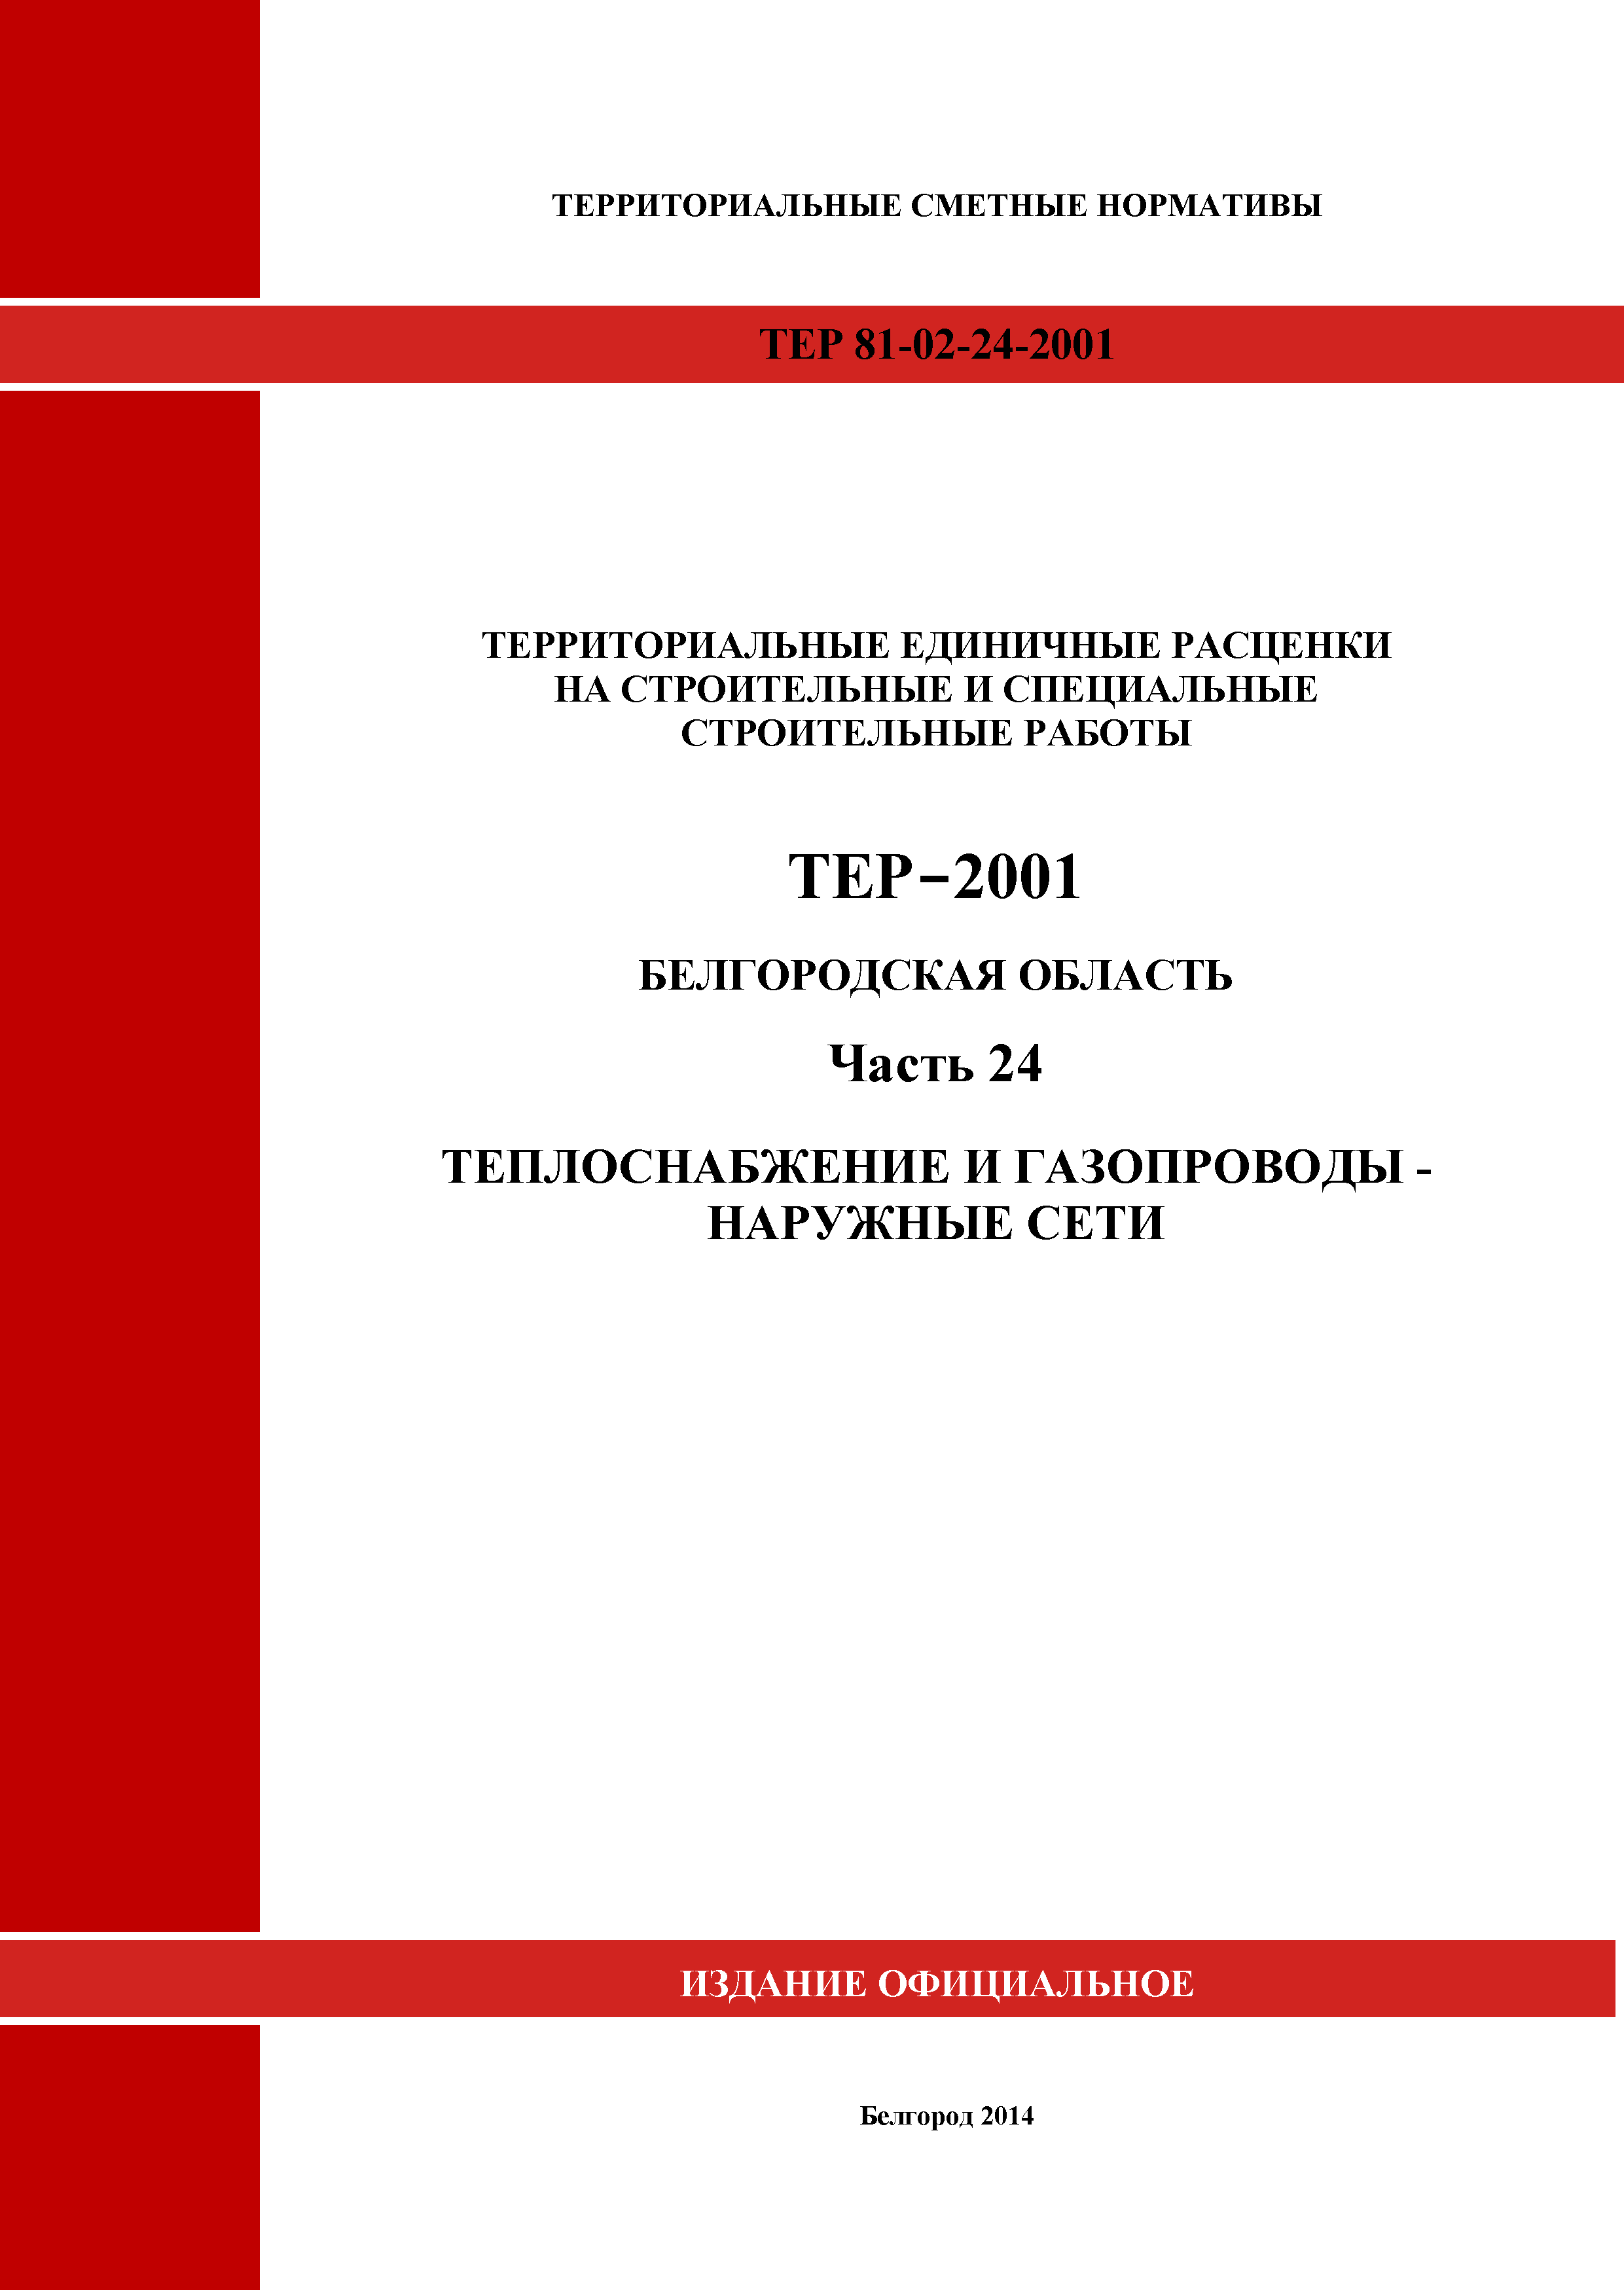 ТЕР Белгородская область 81-02-24-2001